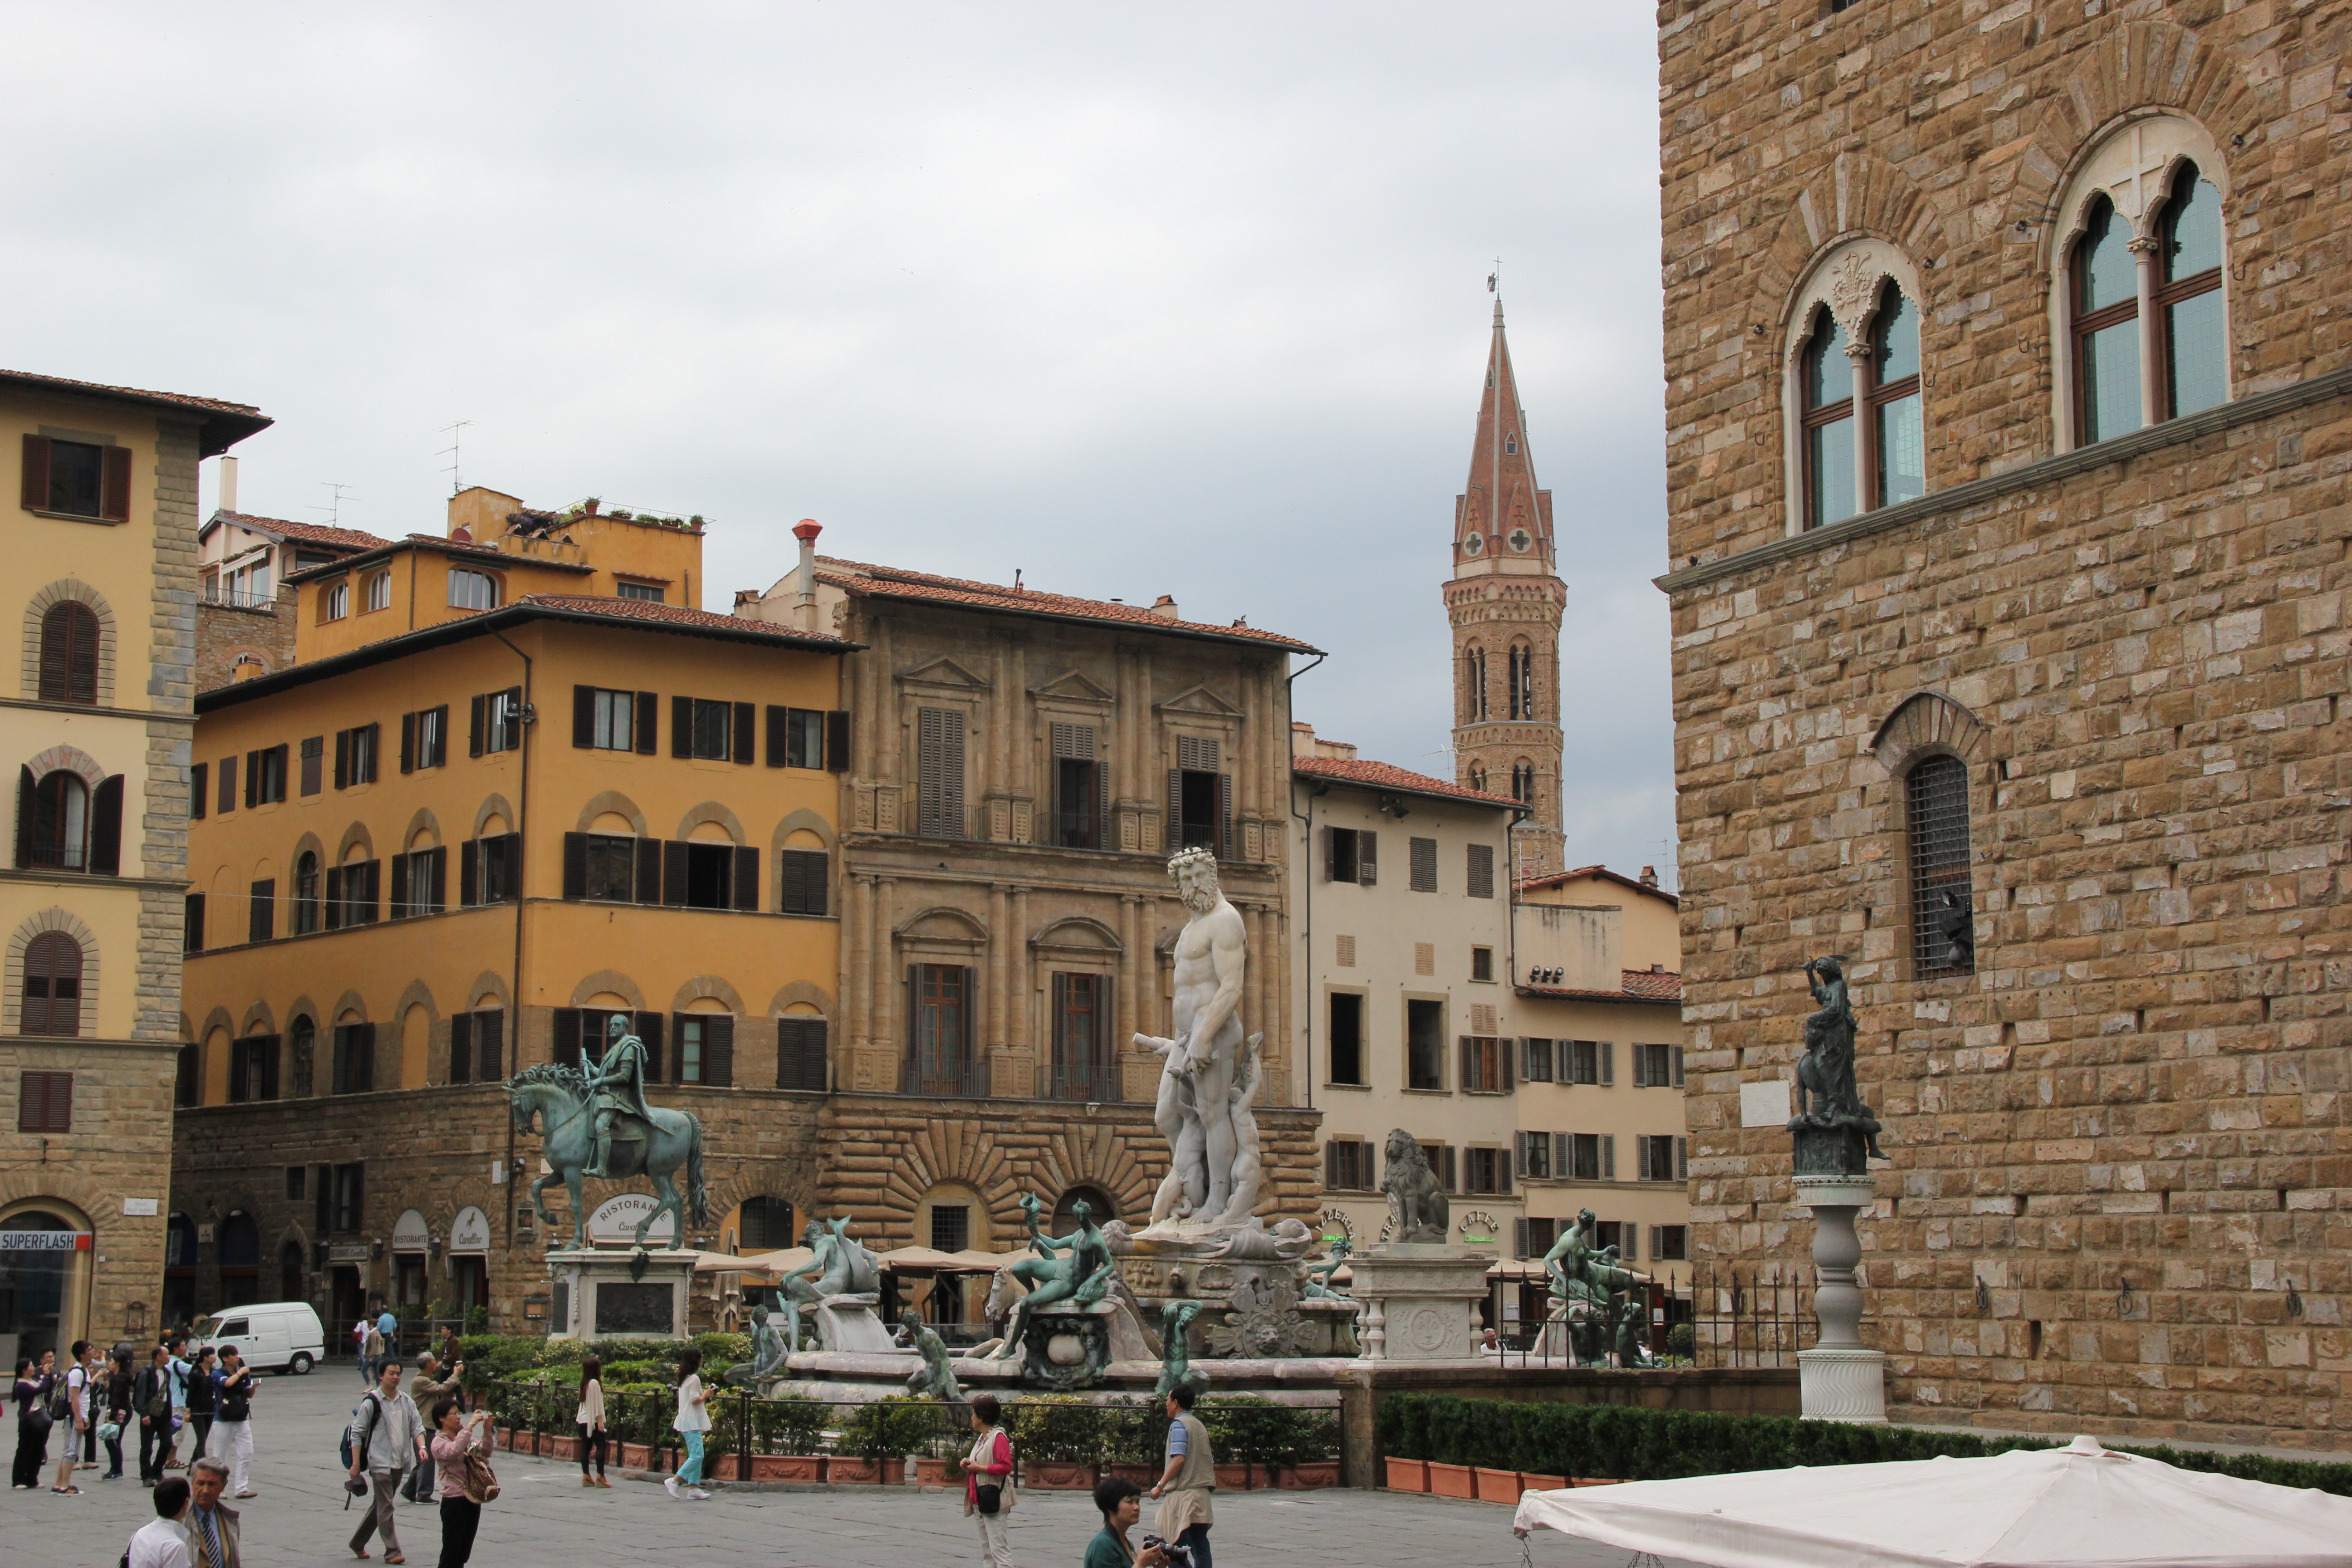 【携程攻略】佛罗伦萨市政厅广场景点,市政广场,一般去意大利总会去